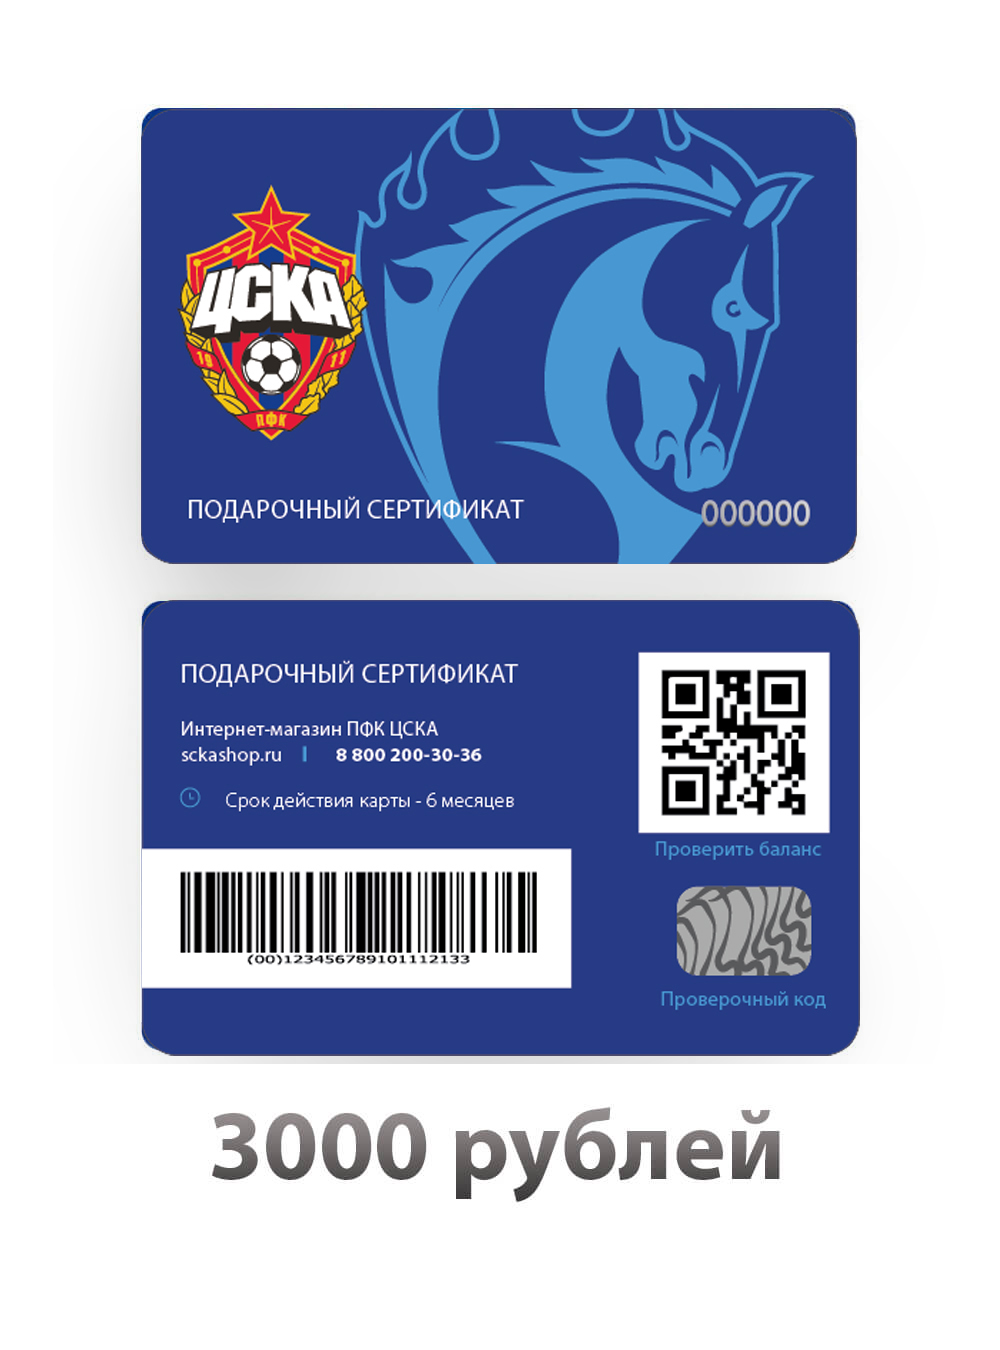 Подарочный сертификат на 3000 рублей (Электронный сертификат на 3000 рублей) от Cskashop